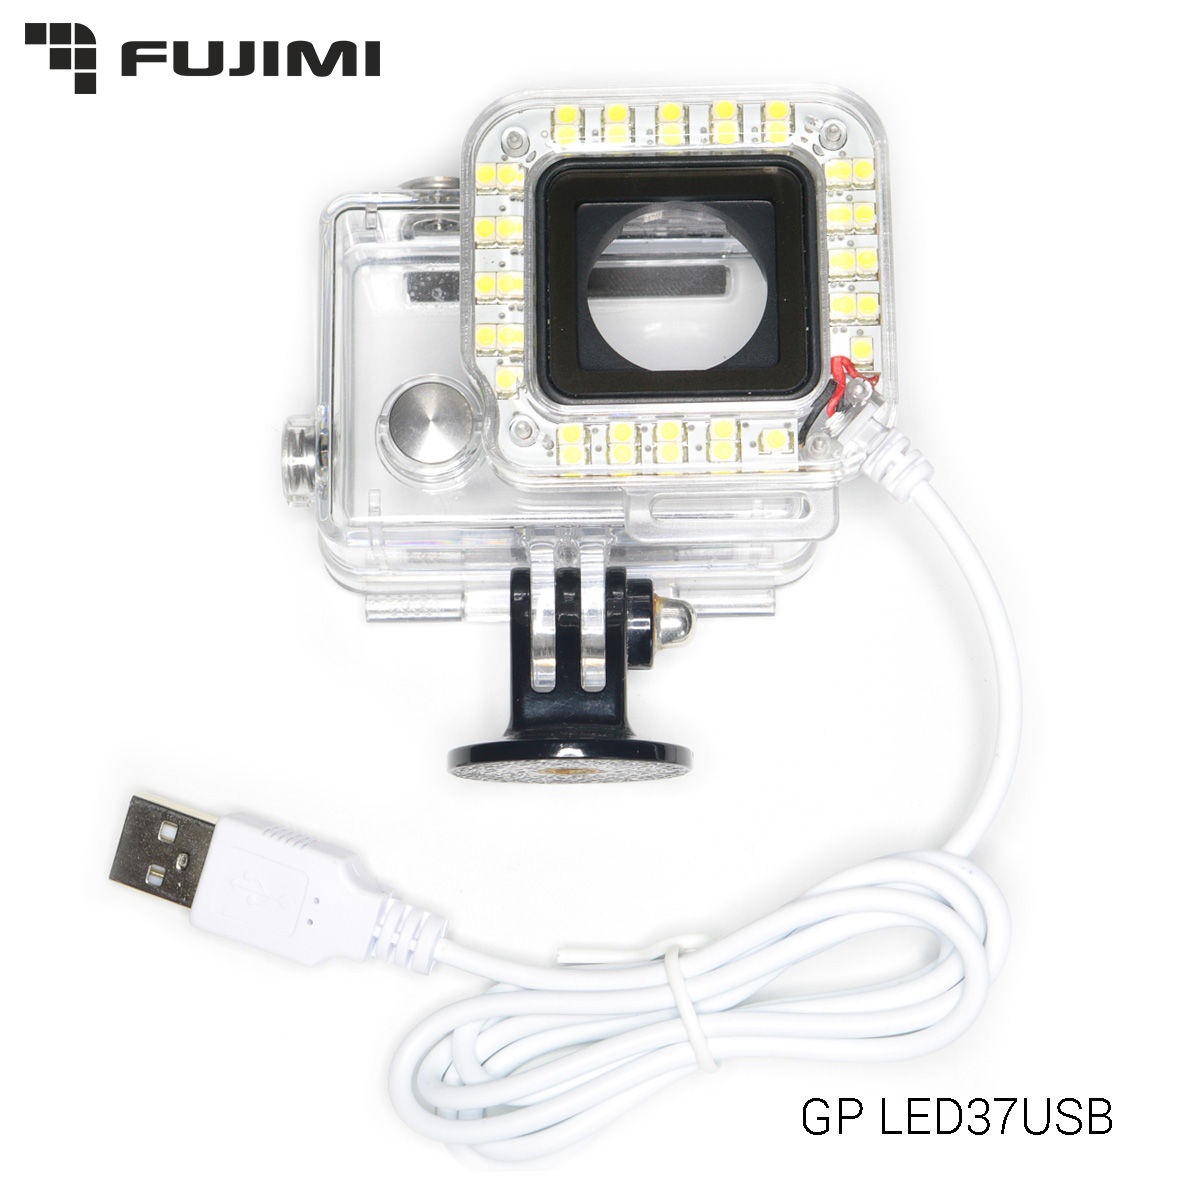 Диодный свет для камер HERO 3+/4 (FUJIMI GP-LED37USB)